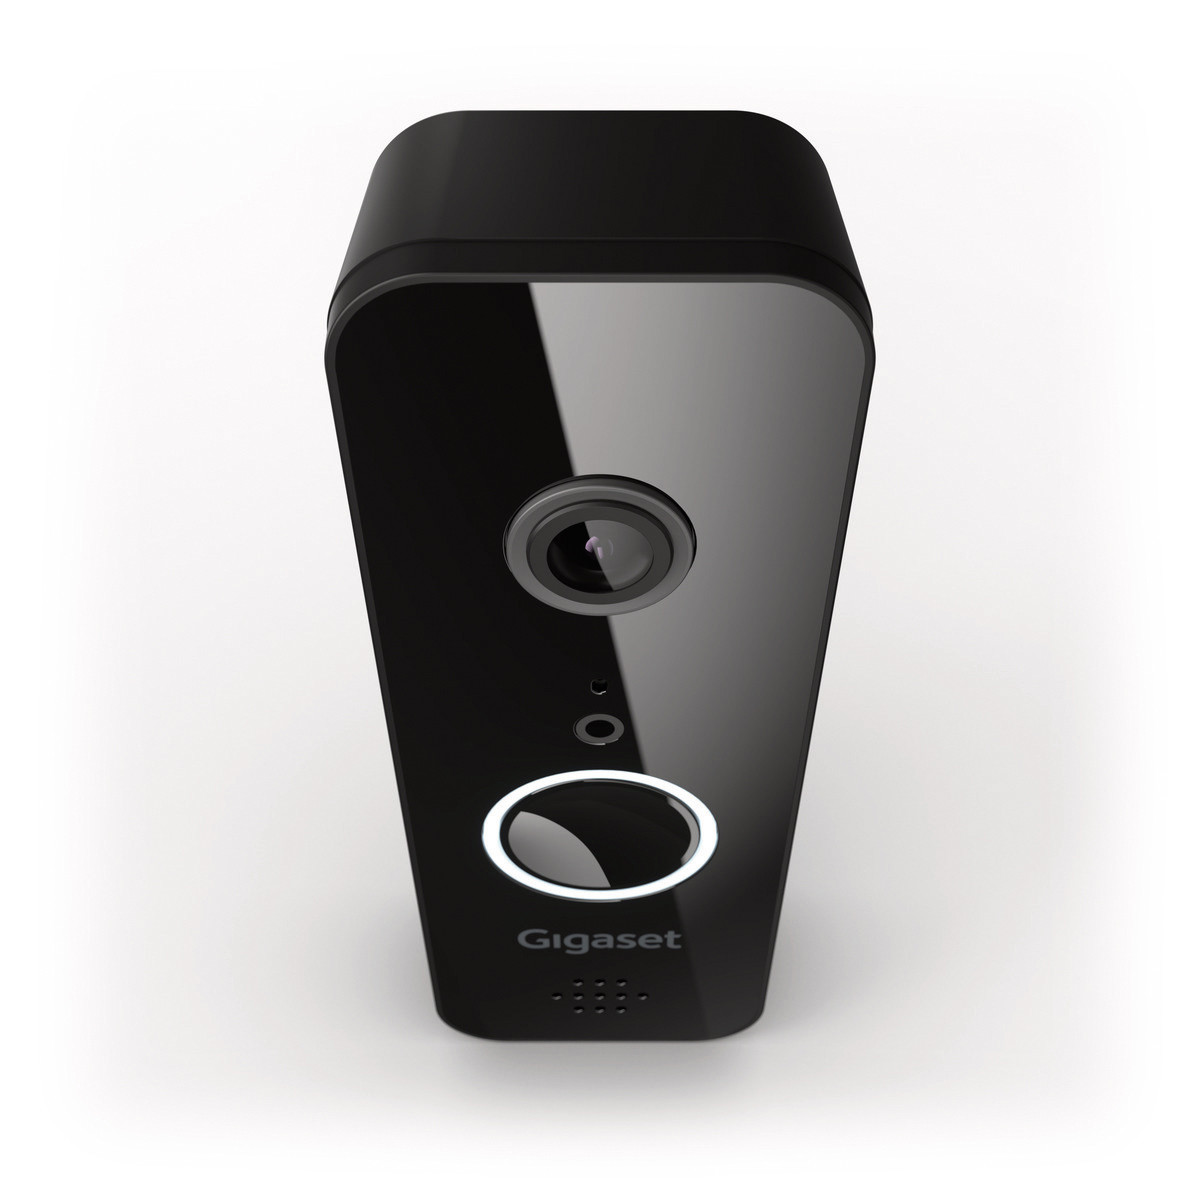 Gigaset Smart Doorbell ONE X